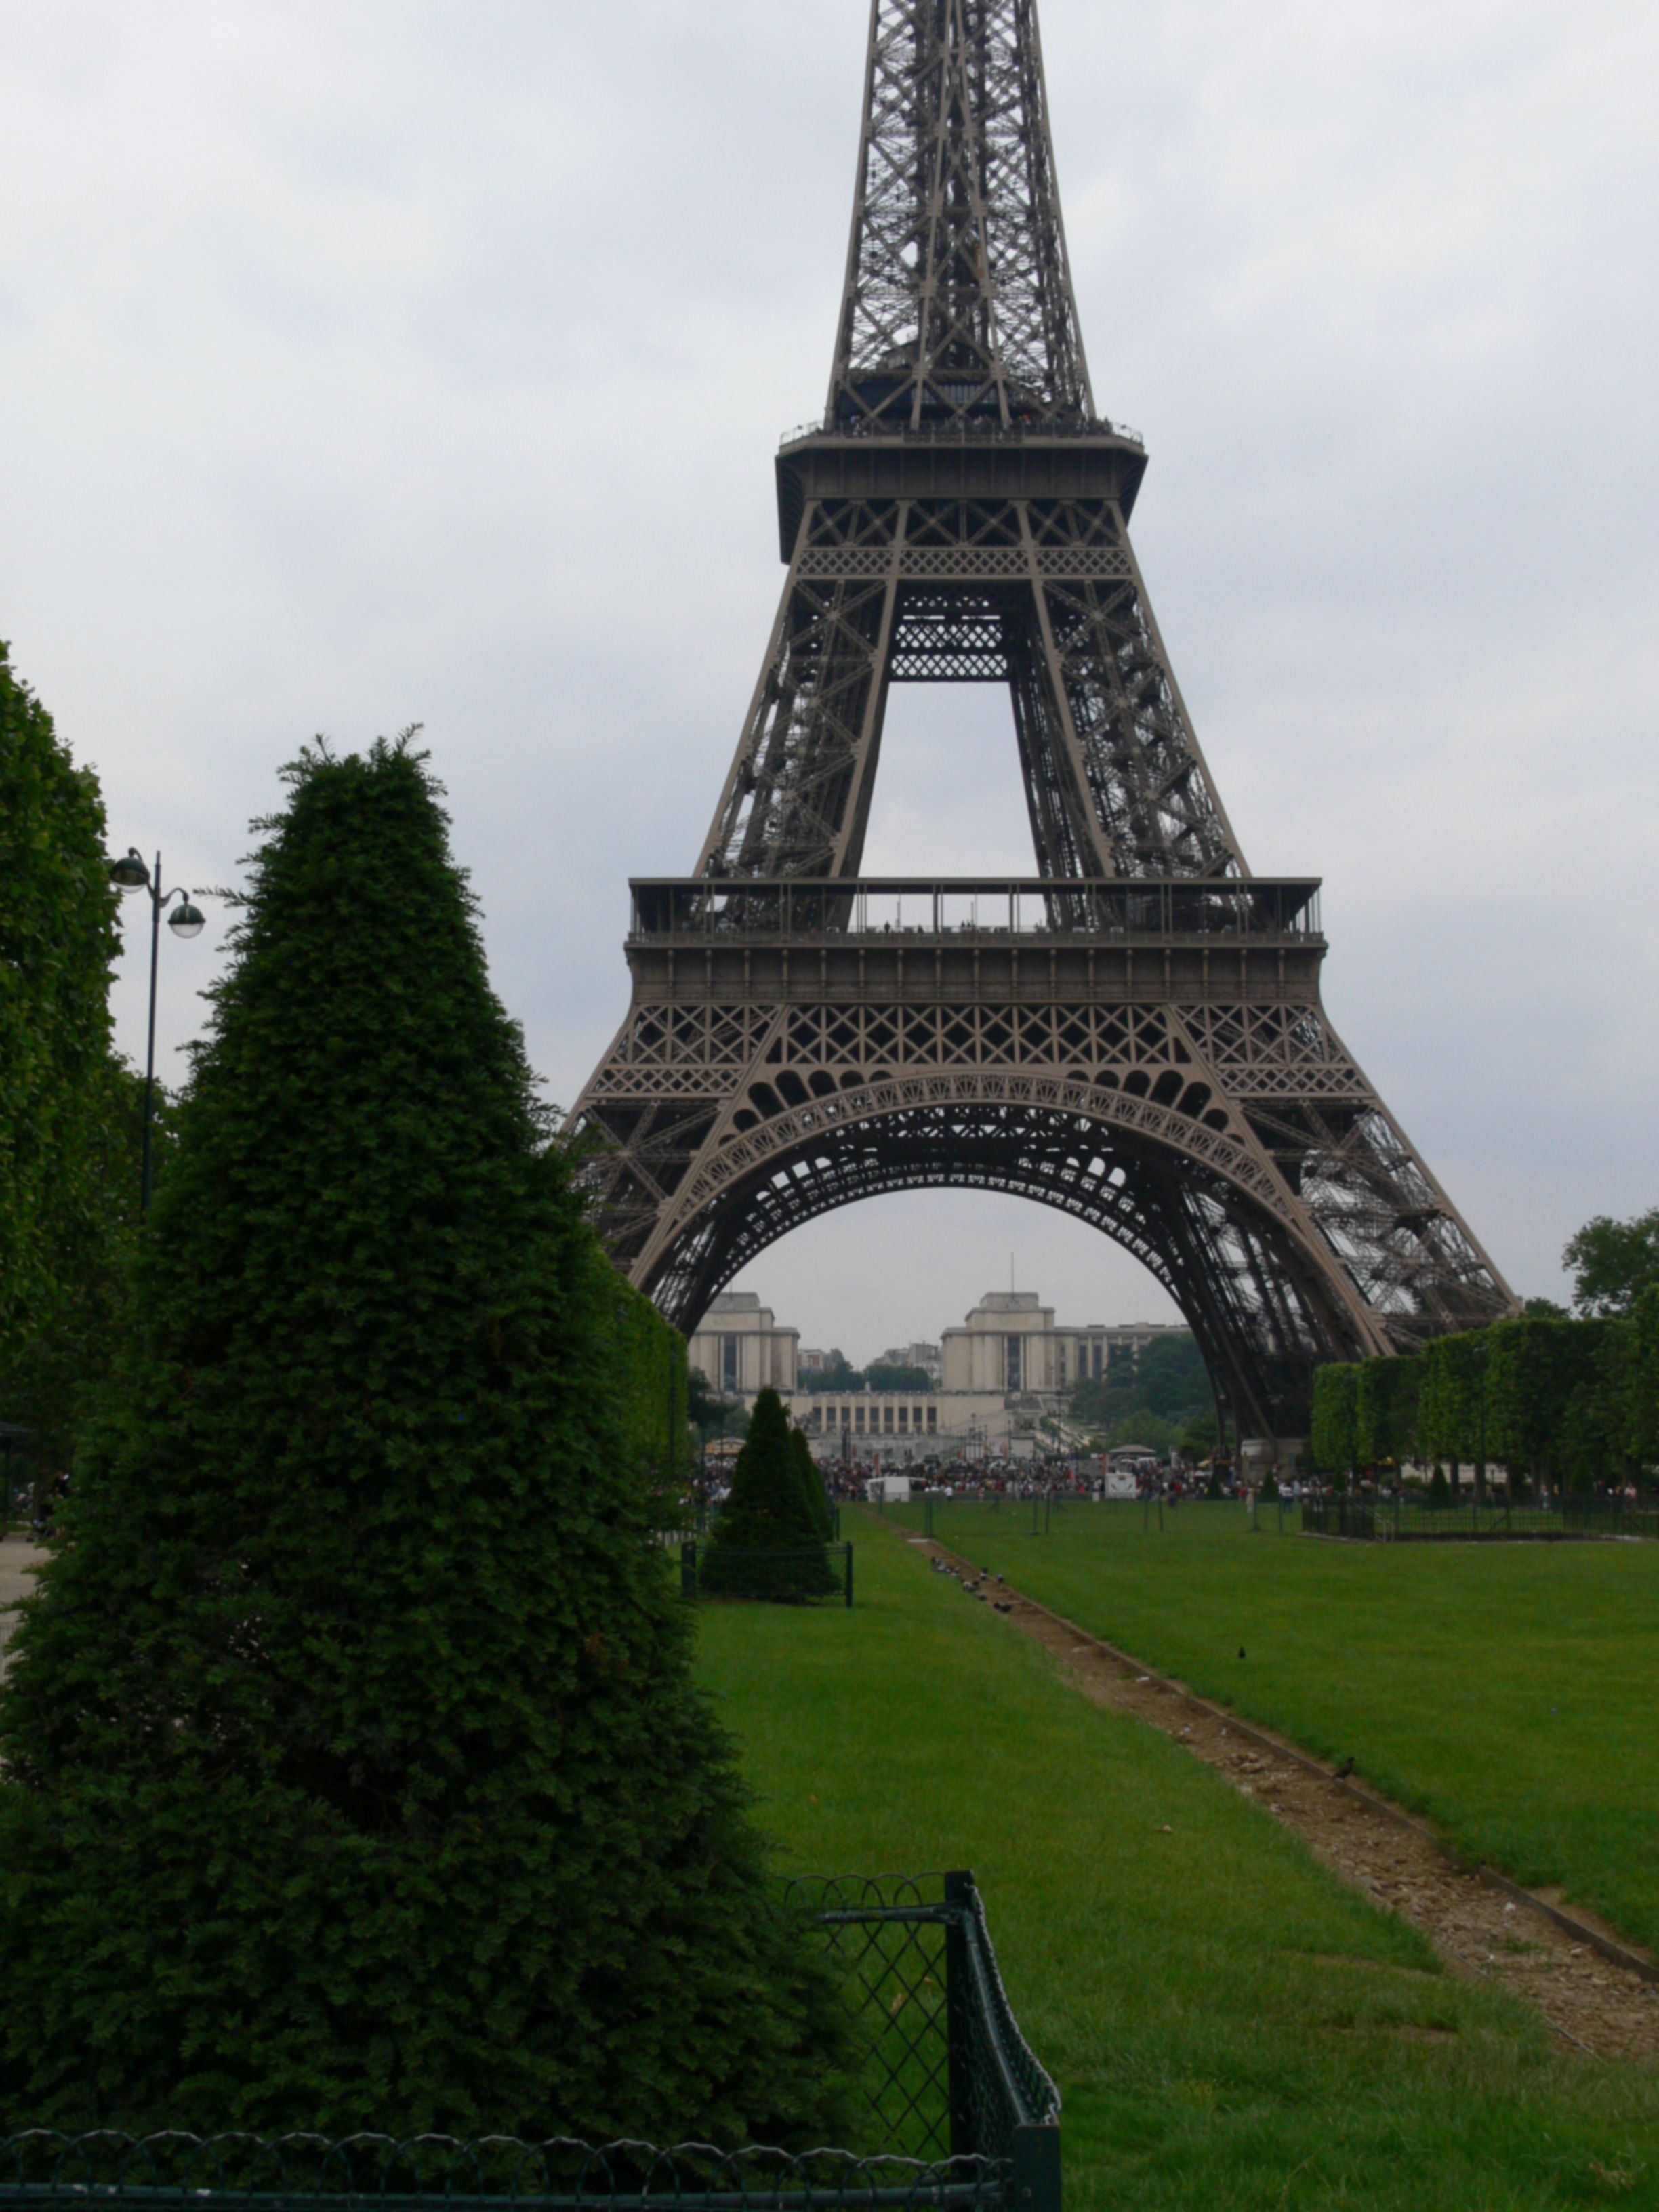 에펠탑과 함께 고친 흐린 사진..